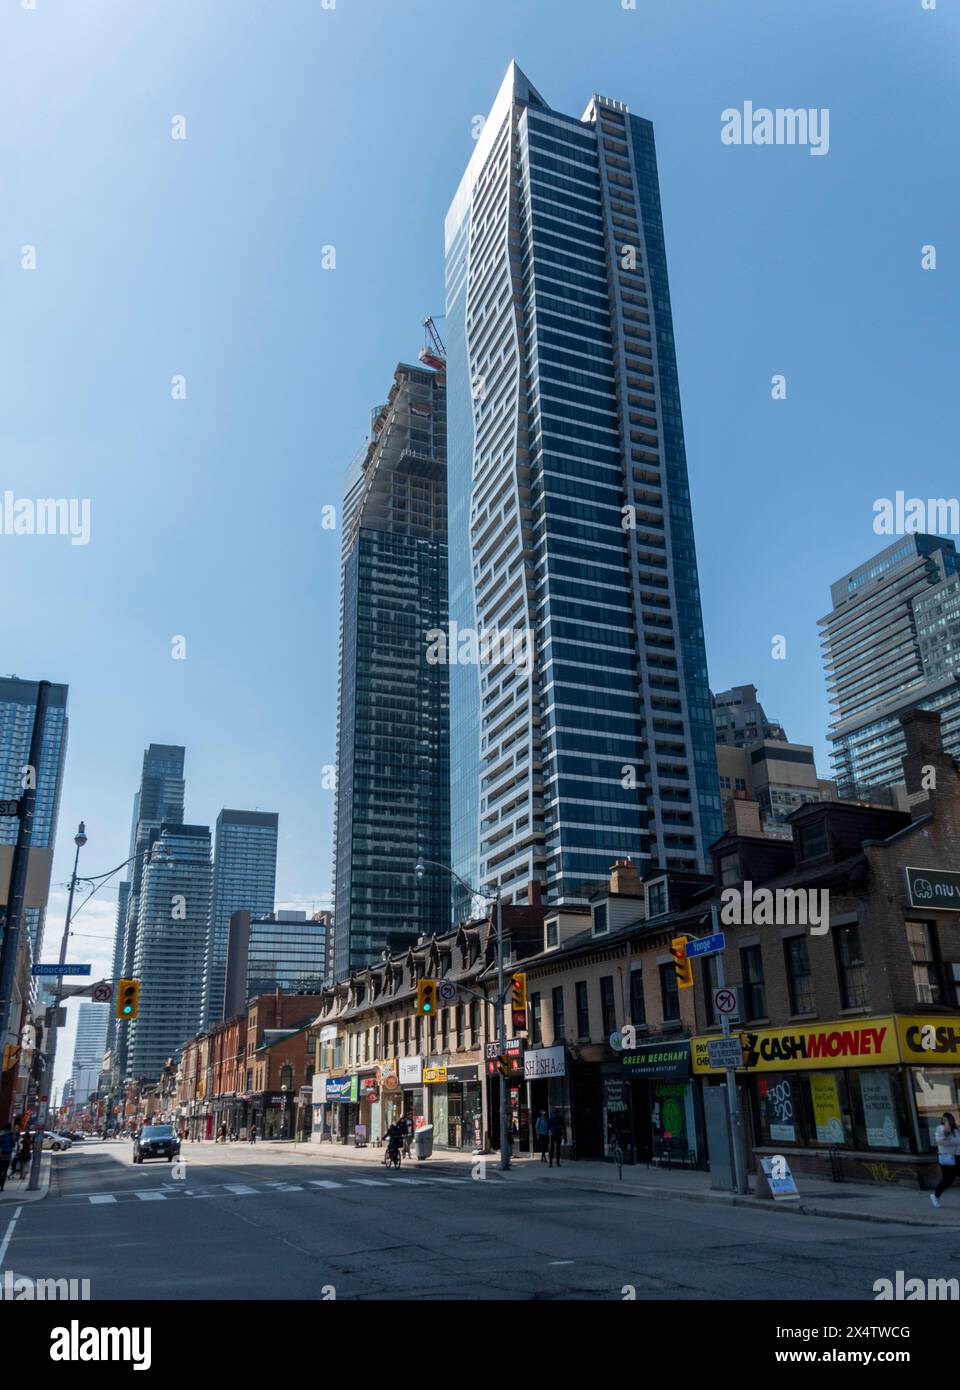 Kontrast zwischen alten flachen Gebäuden und modernen Hochhäusern, Yonge Street, Toronto, Kanada Stockfoto